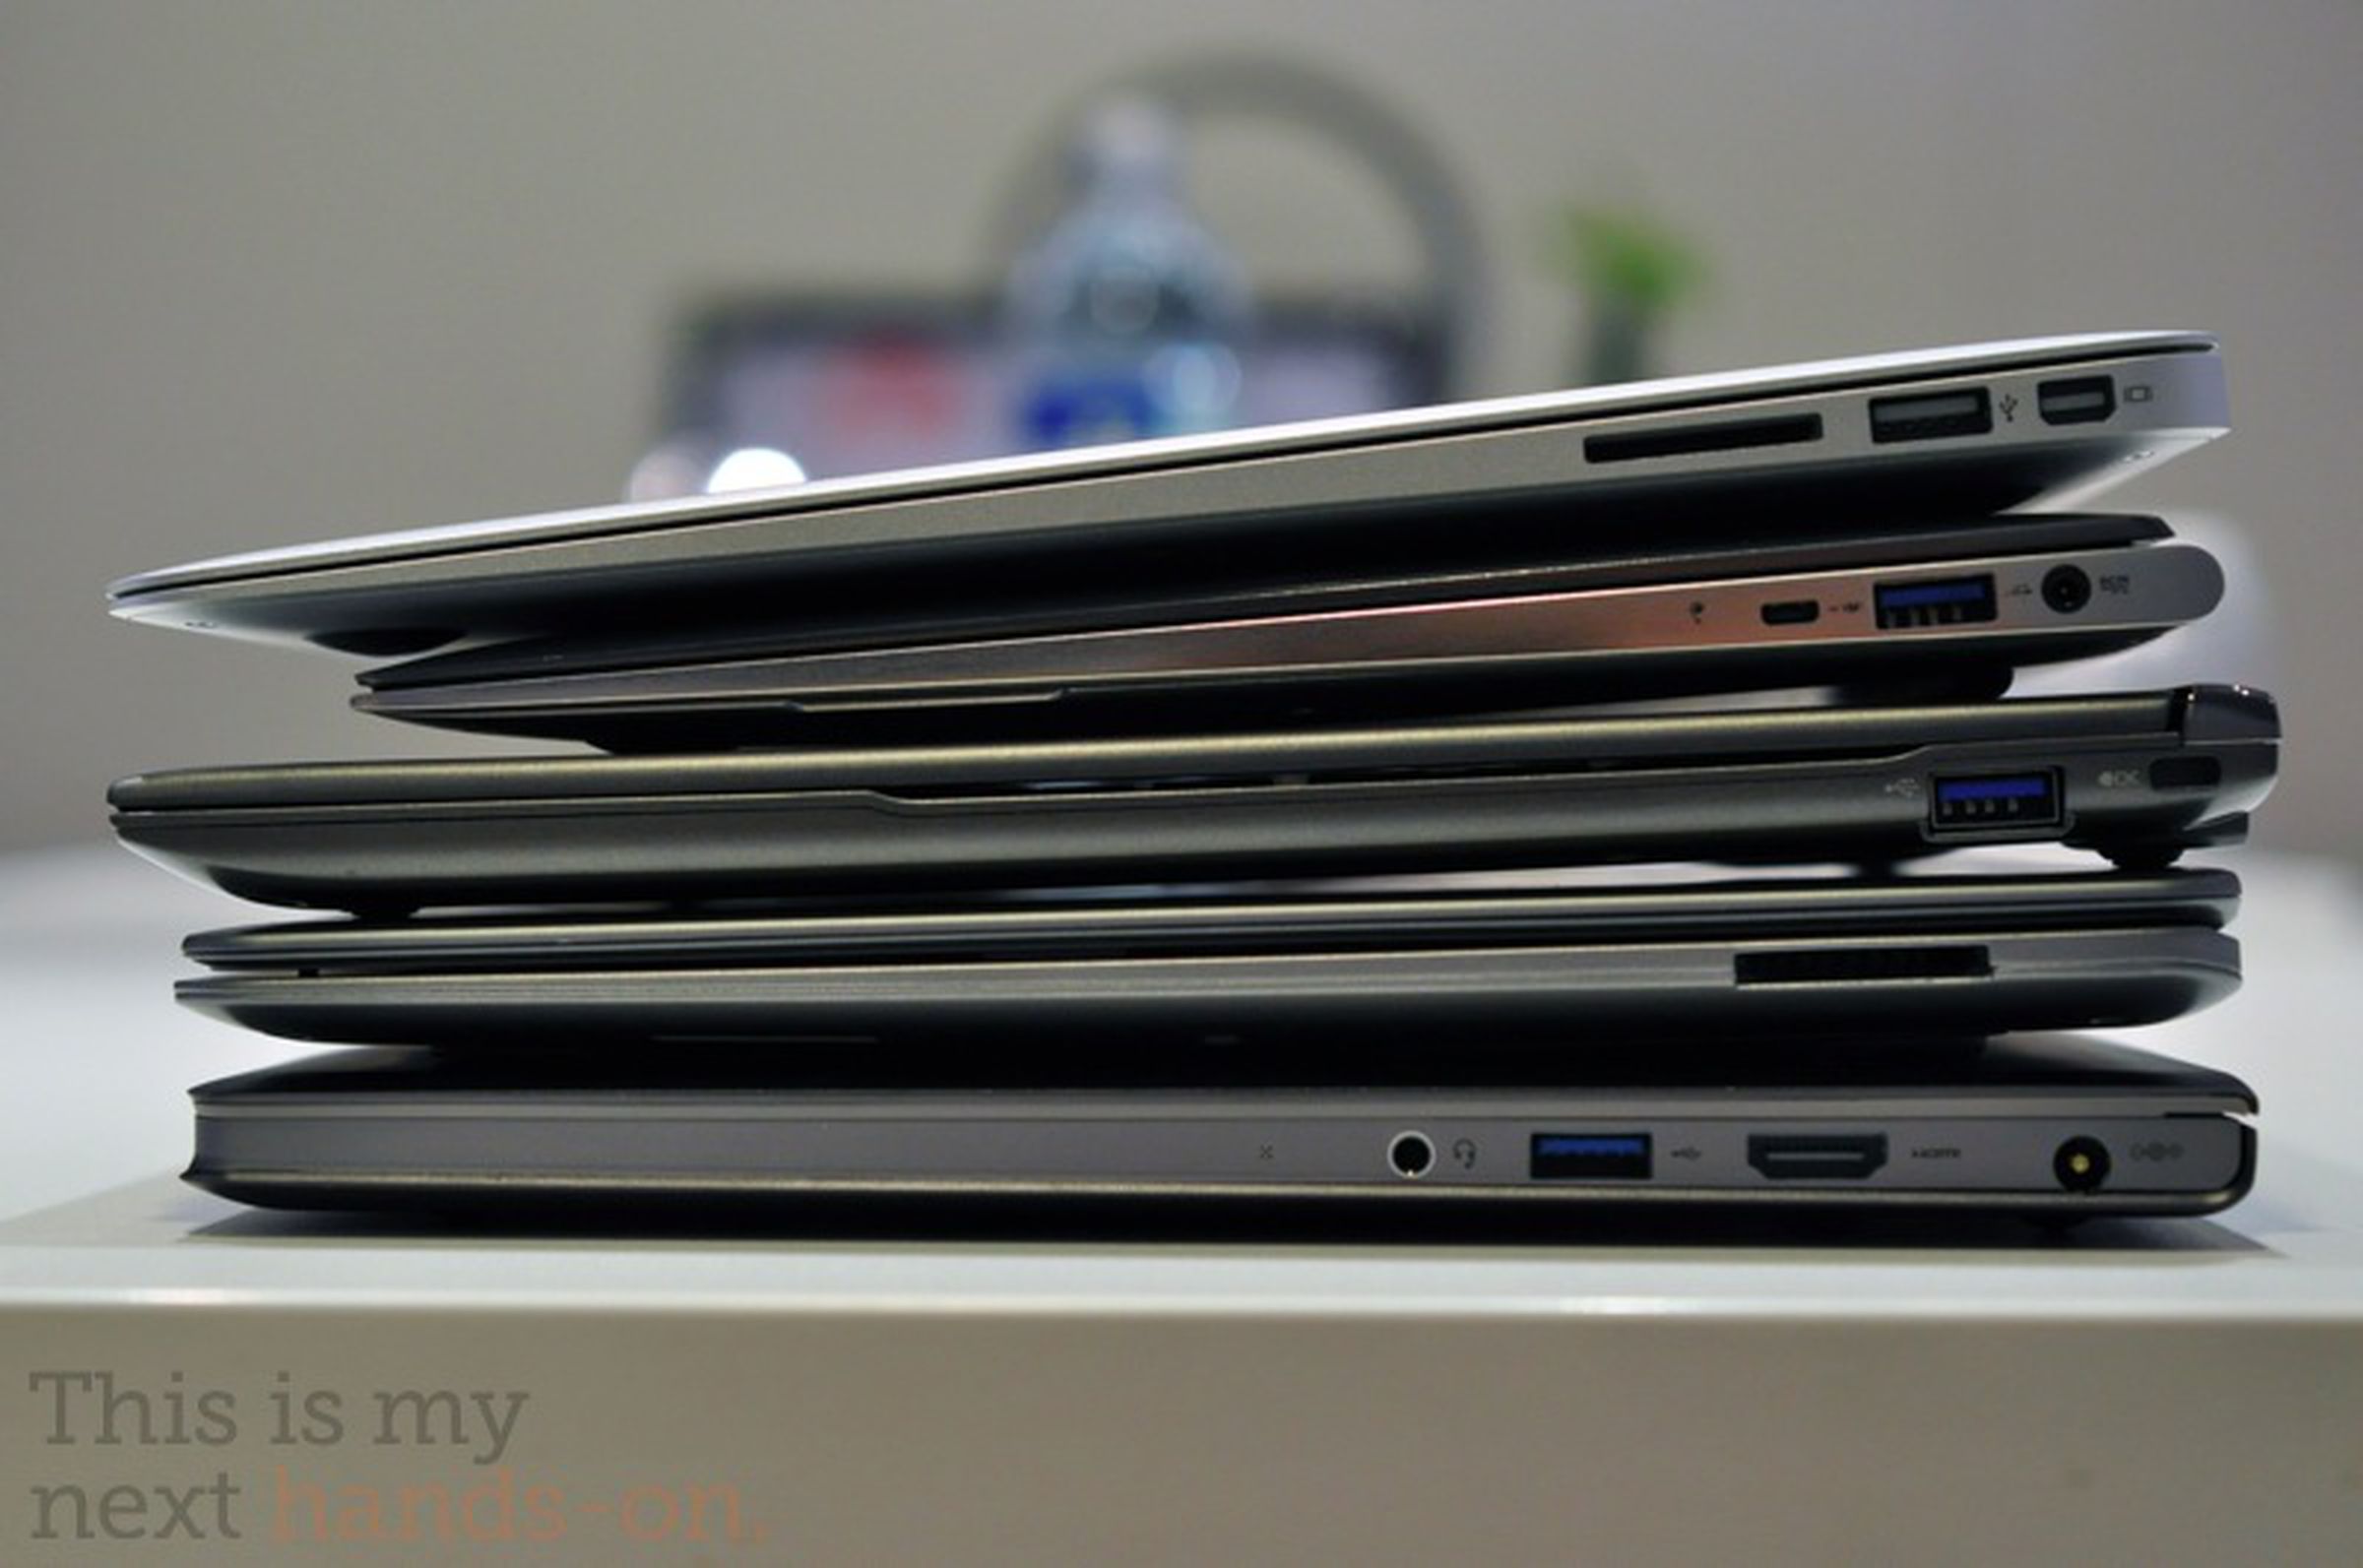 MacBook Air vs ASUS UX21 photos (plus group comparison)